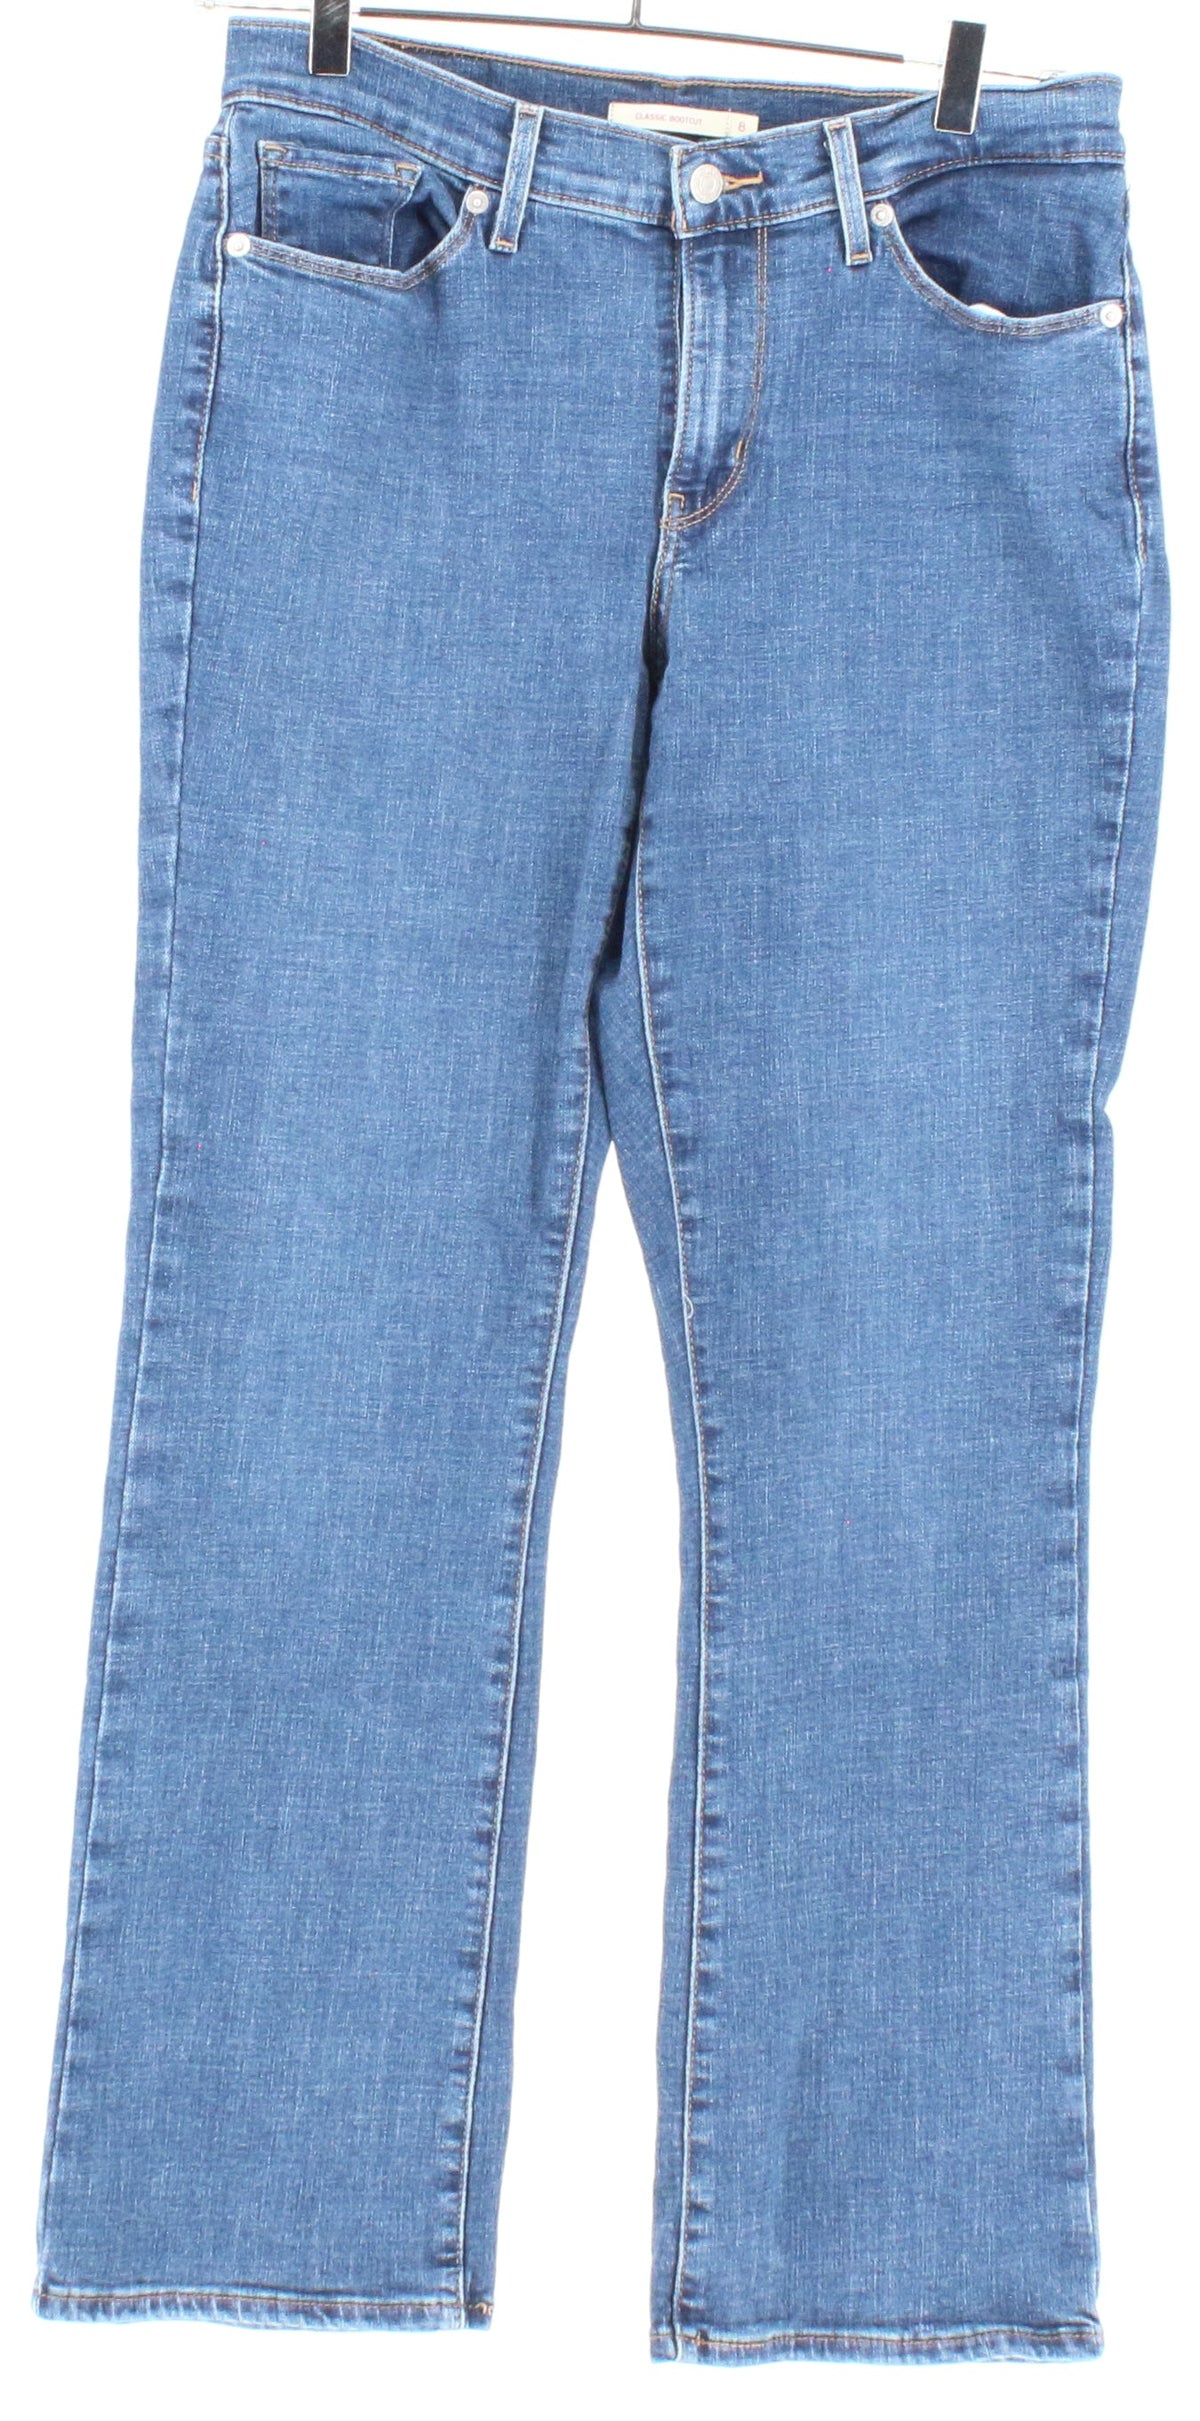 Levis Classic Bootcut Blue Jeans